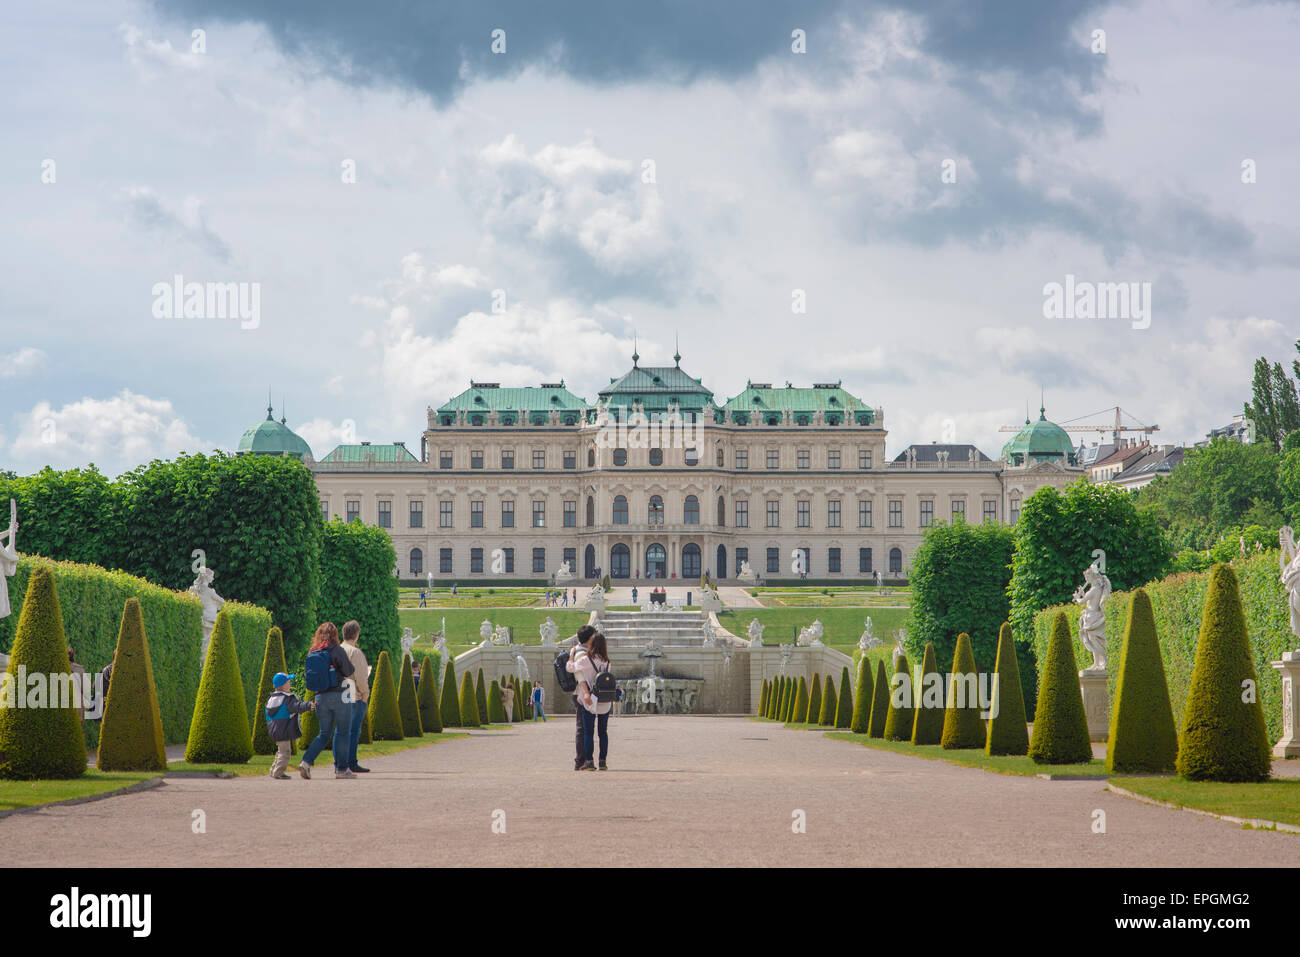 Viena Belvedere Palacio jardín, vista de los turistas en el Schloss Belvedere dando un paseo por sus famosos jardines paisajísticos, Viena, Austria. Foto de stock